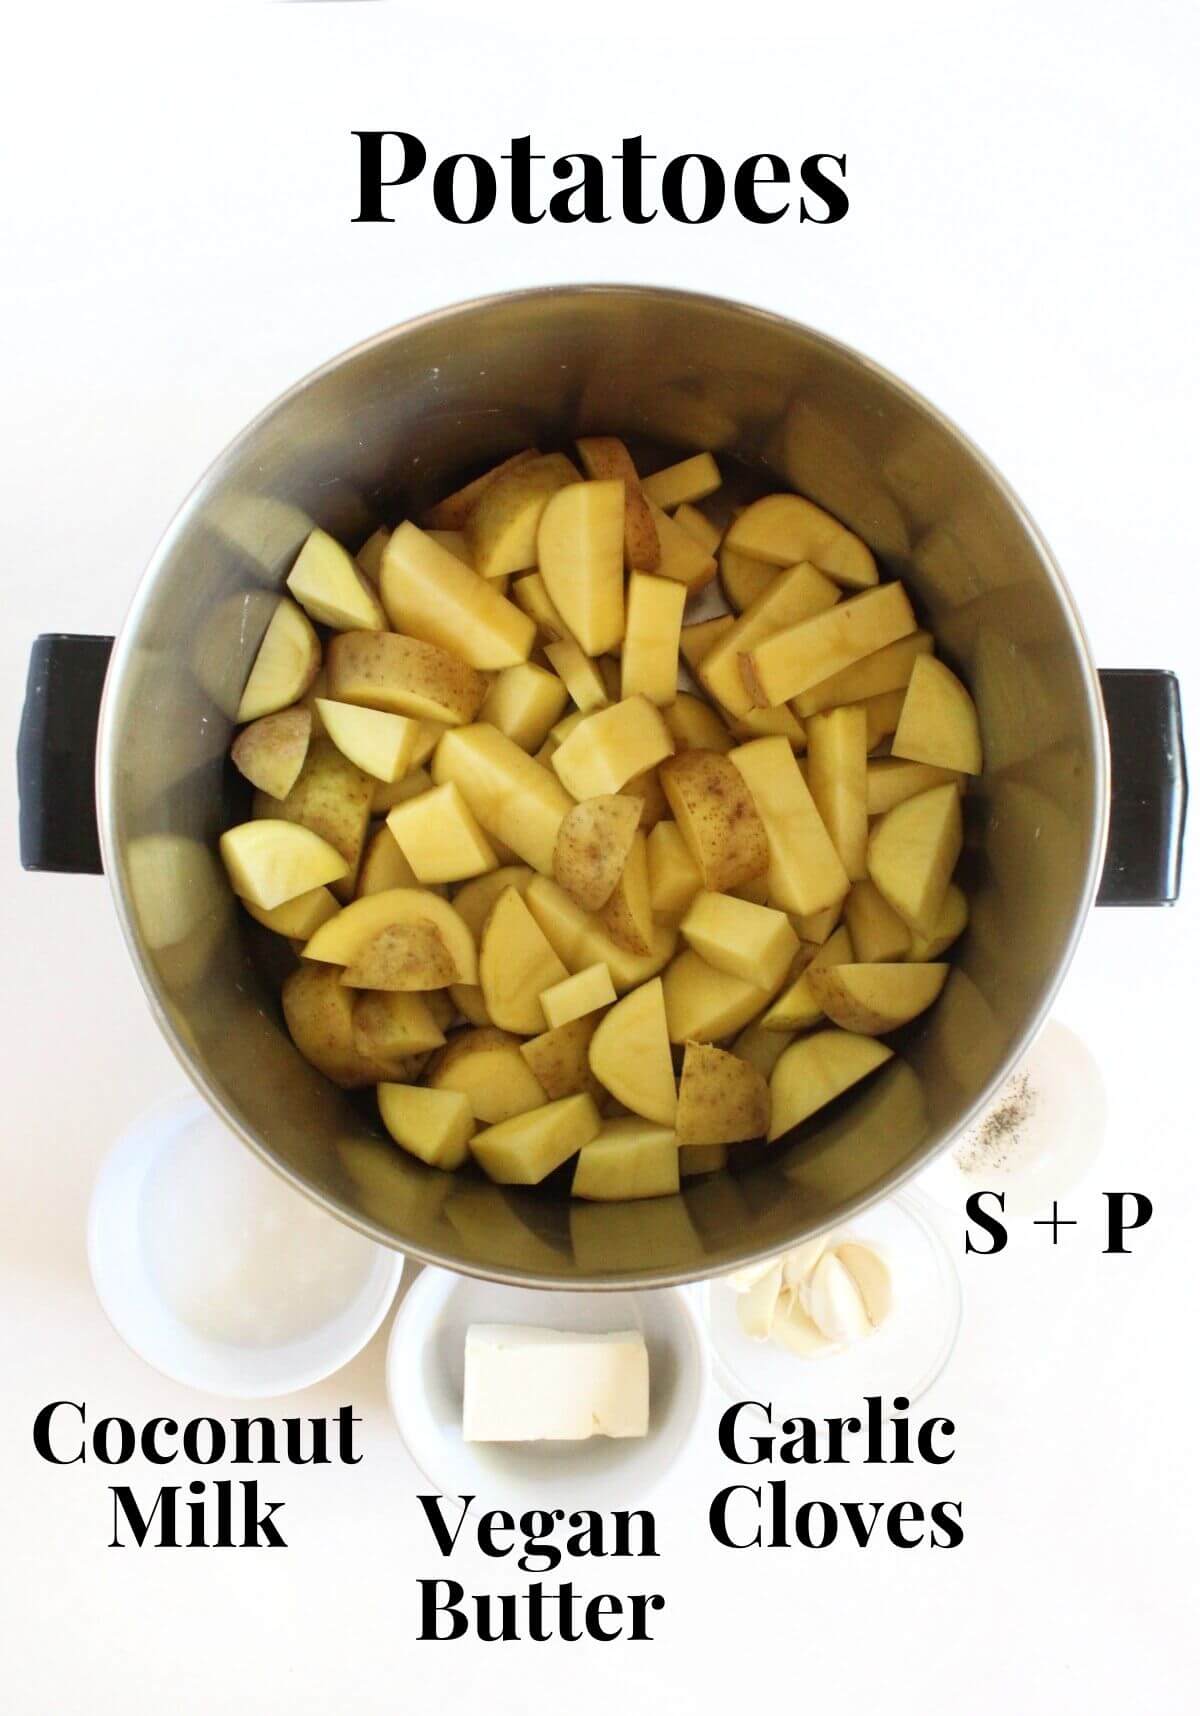 ingredients to make creamy vegan garlic mashed potatoes.